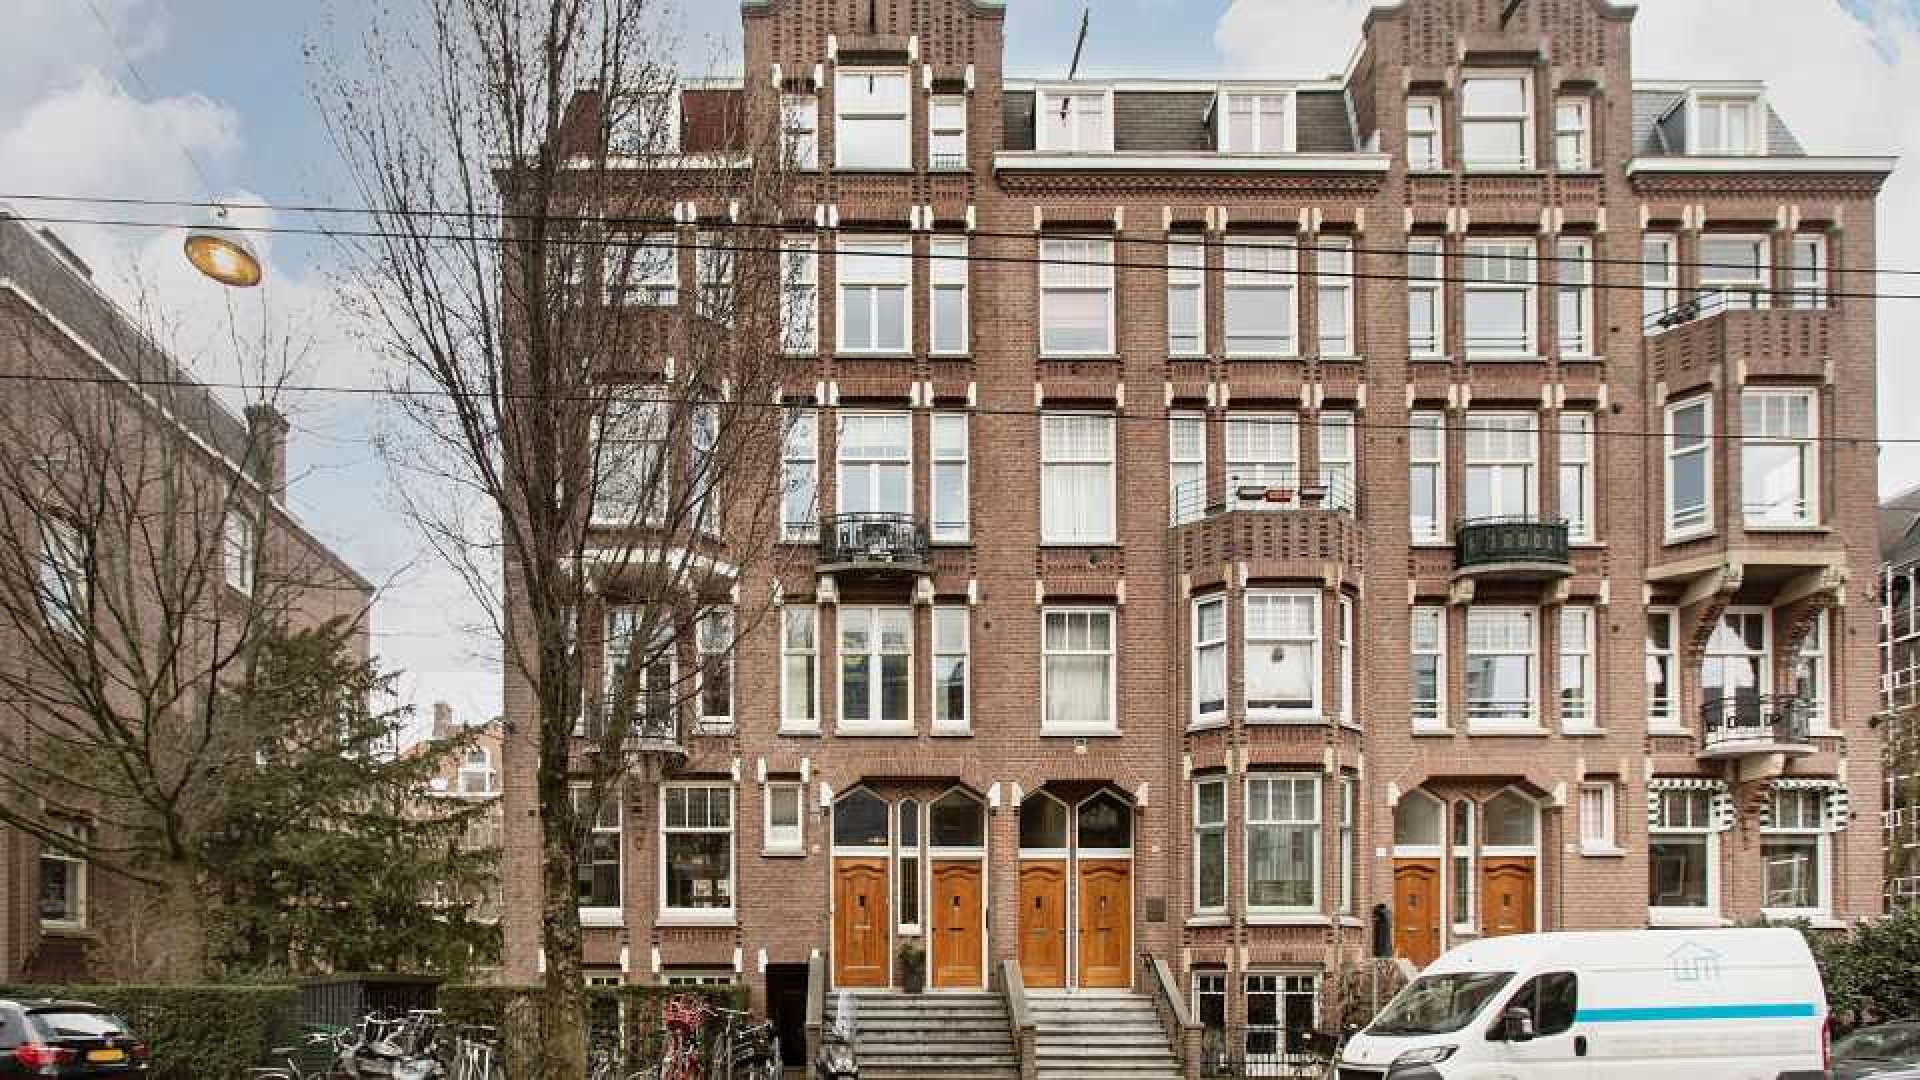 Jack Spijkerman zet zijn dubbele benedenhuis in Amsterdam Oud Zuid te koop. Zie foto's 1